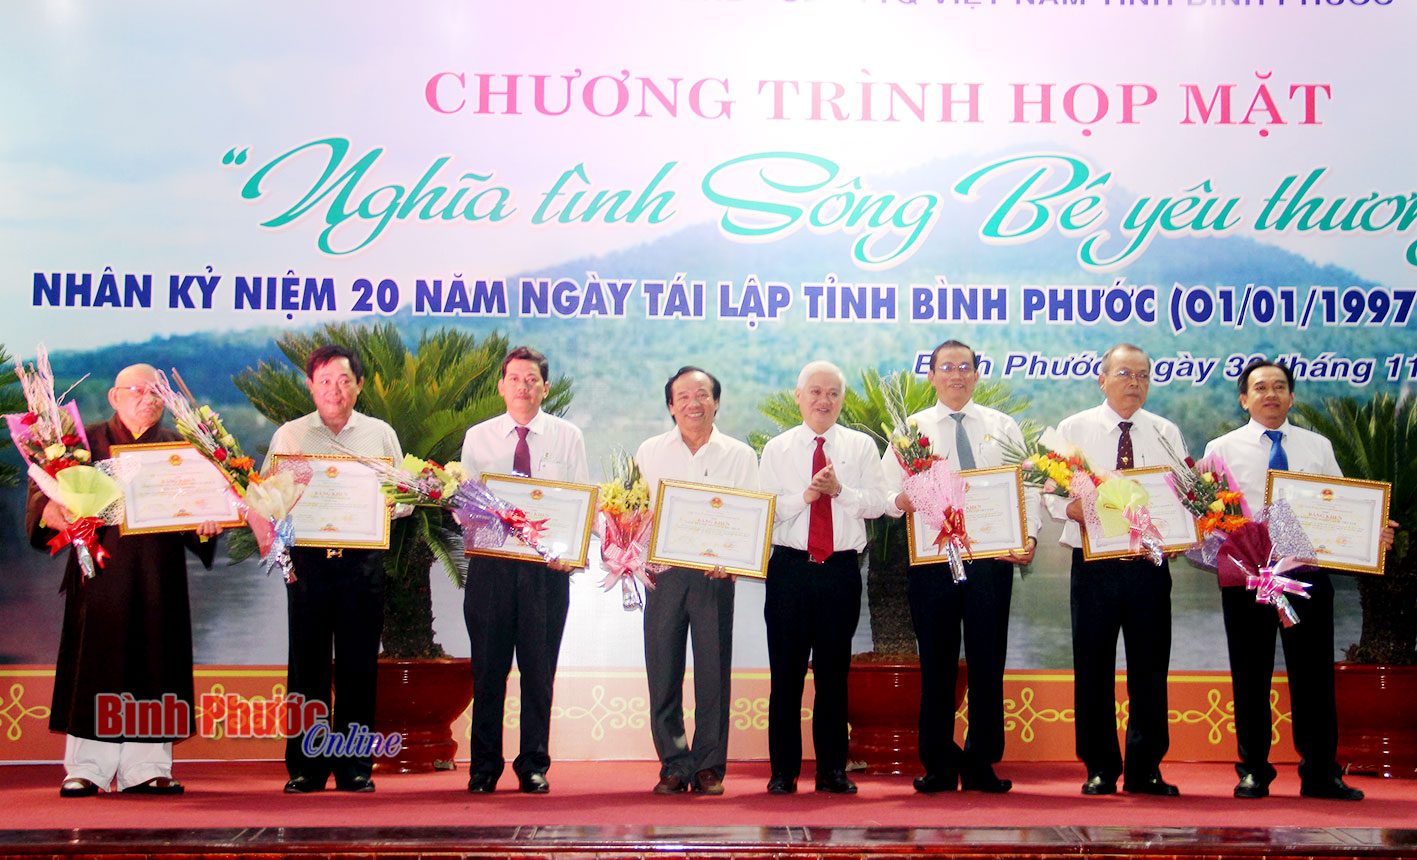 Bí thư Tỉnh ủy Nguyễn Văn Lợi trao bằng khen của Chủ tịch UBND tỉnh cho các tập thể tại buổi họp mặt